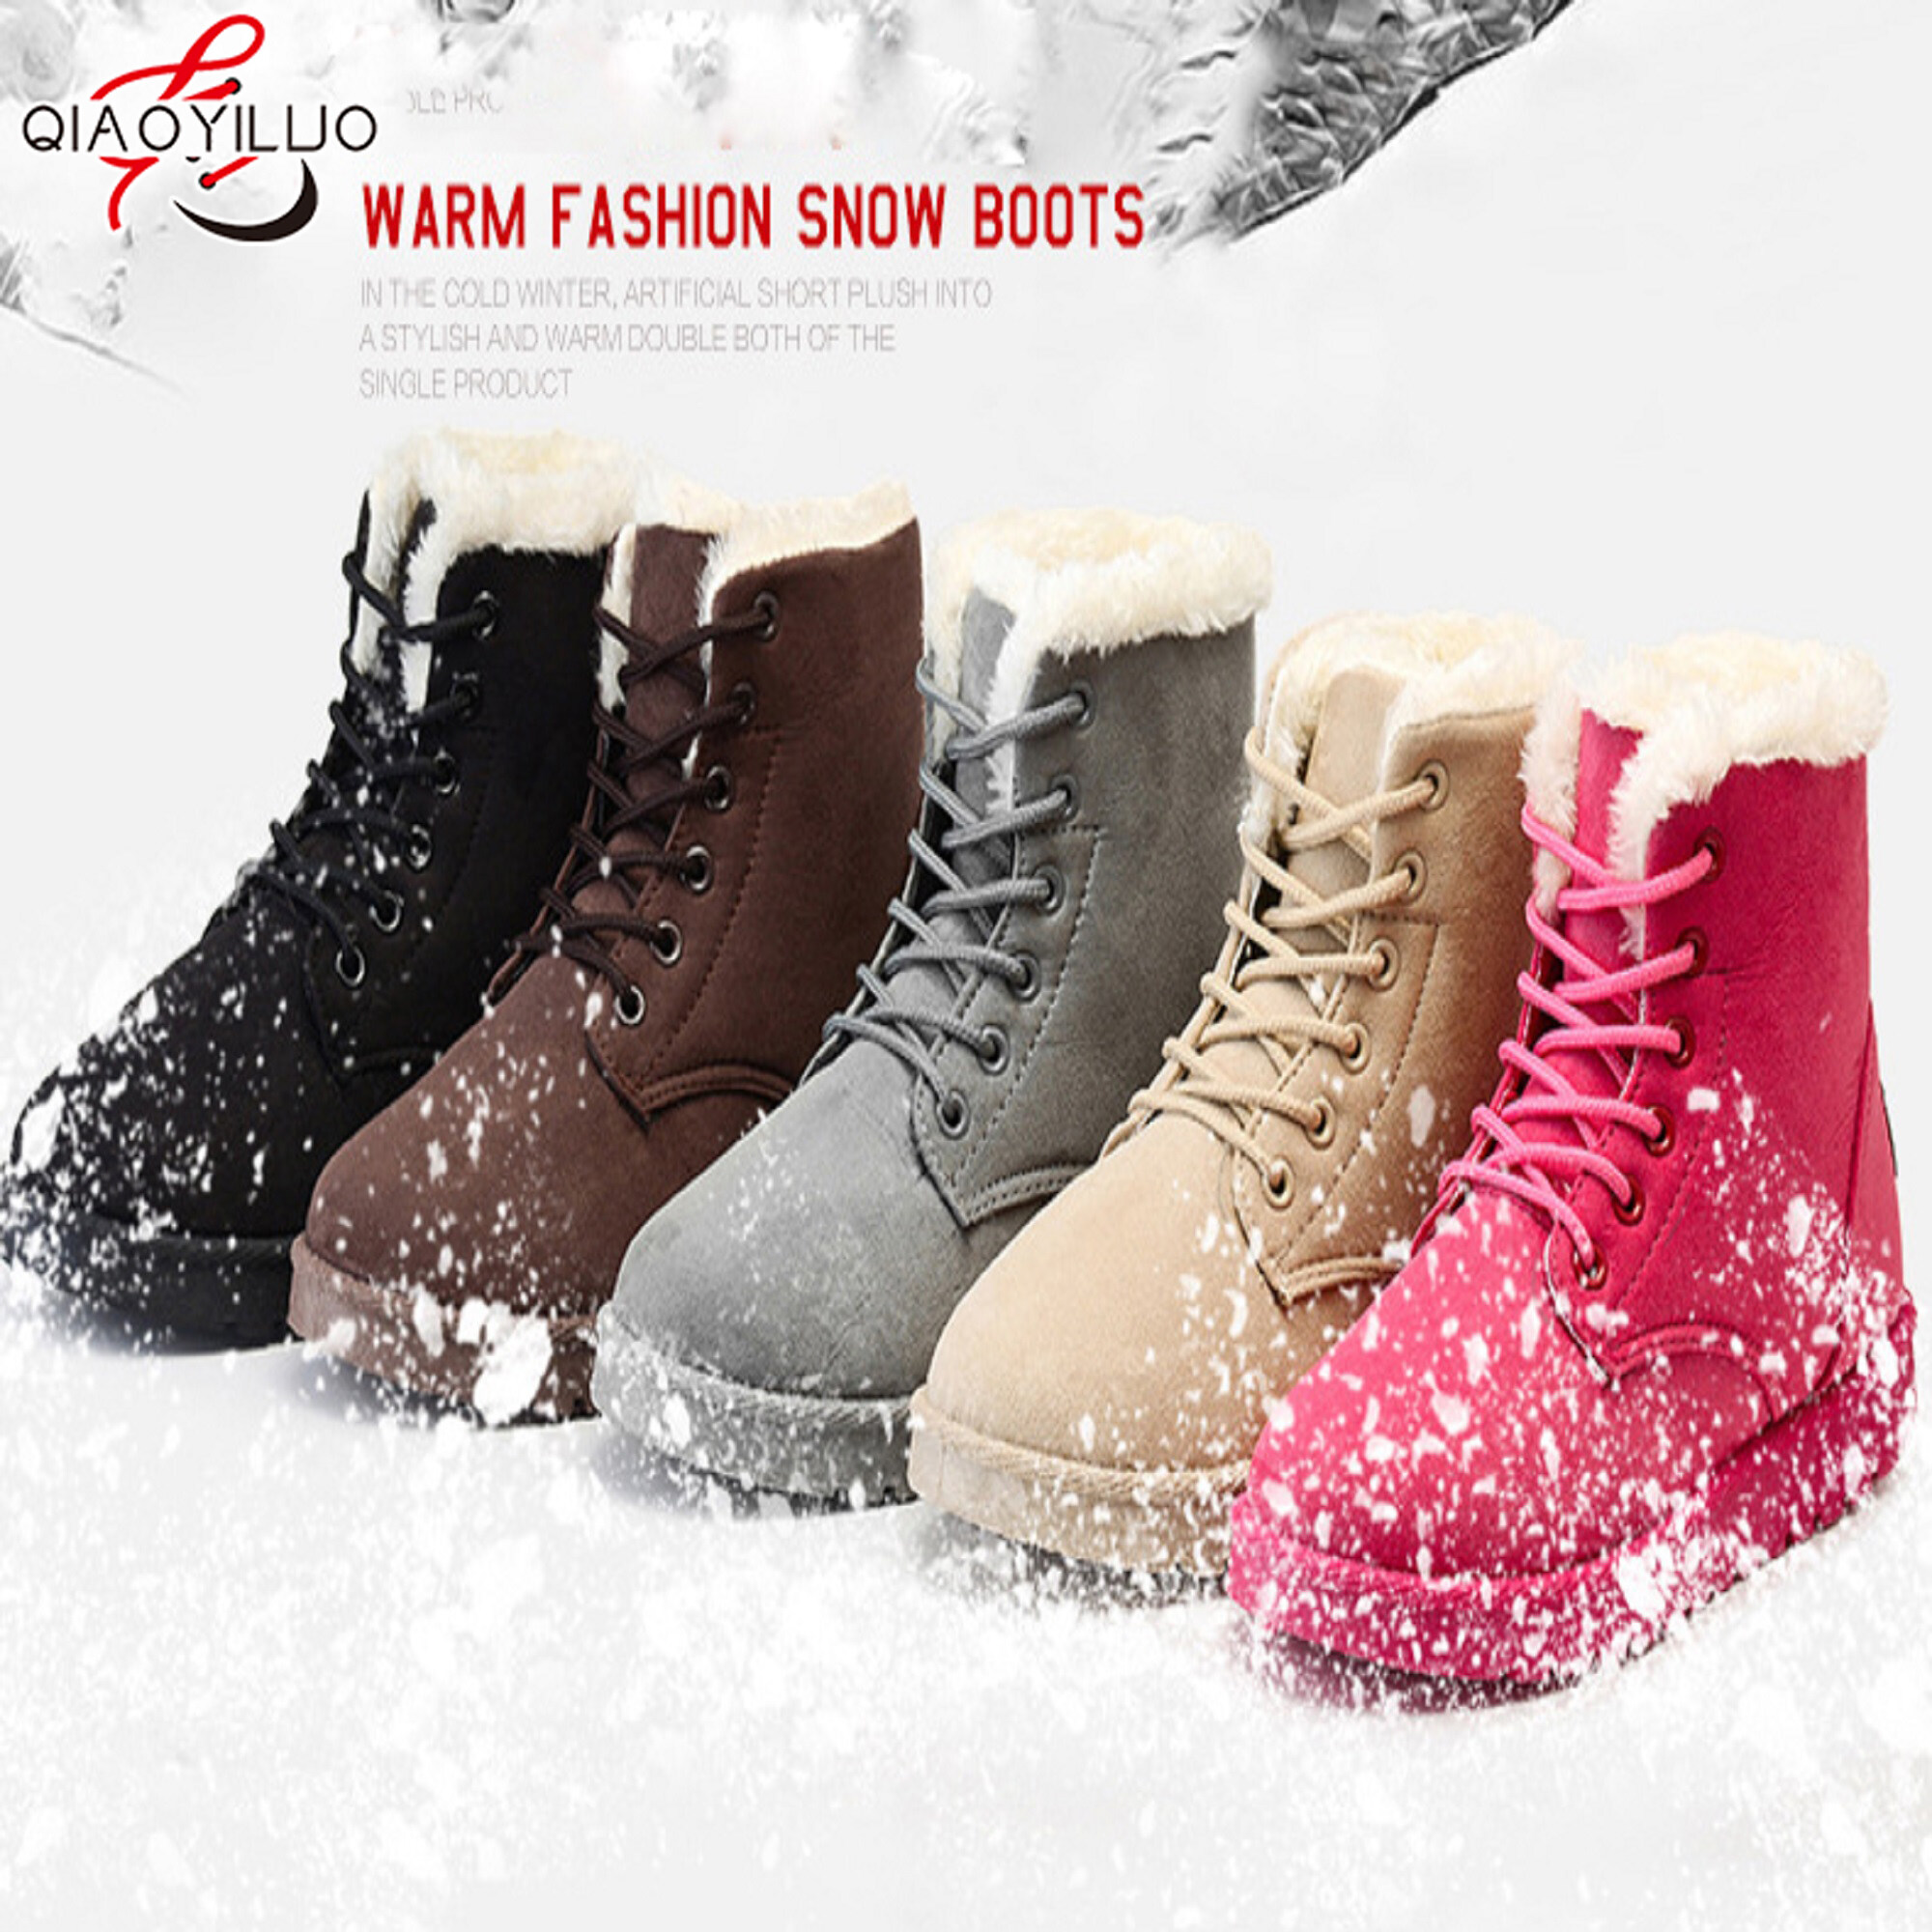 QiaoYiLuoรองเท้ากันหนาวสำหรับผู้หญิง รองเท้าหิมะ พื้นนุ่ม บุขนด้านใน ให้ความอบอุ่น สไตล์เกาหลี